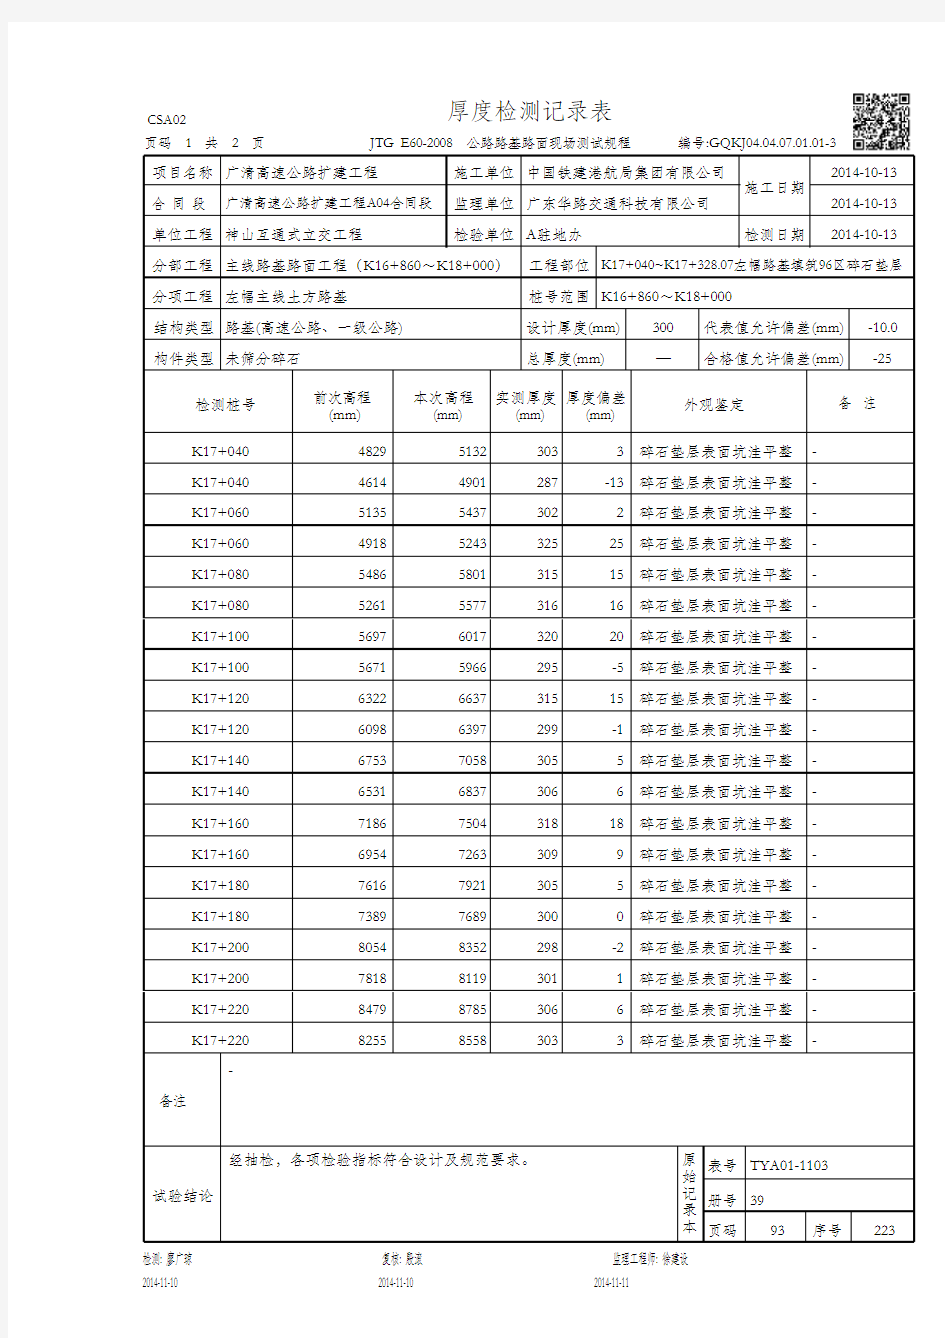 厚度检测记录表(GQKJ04.04.07.01.01-3)